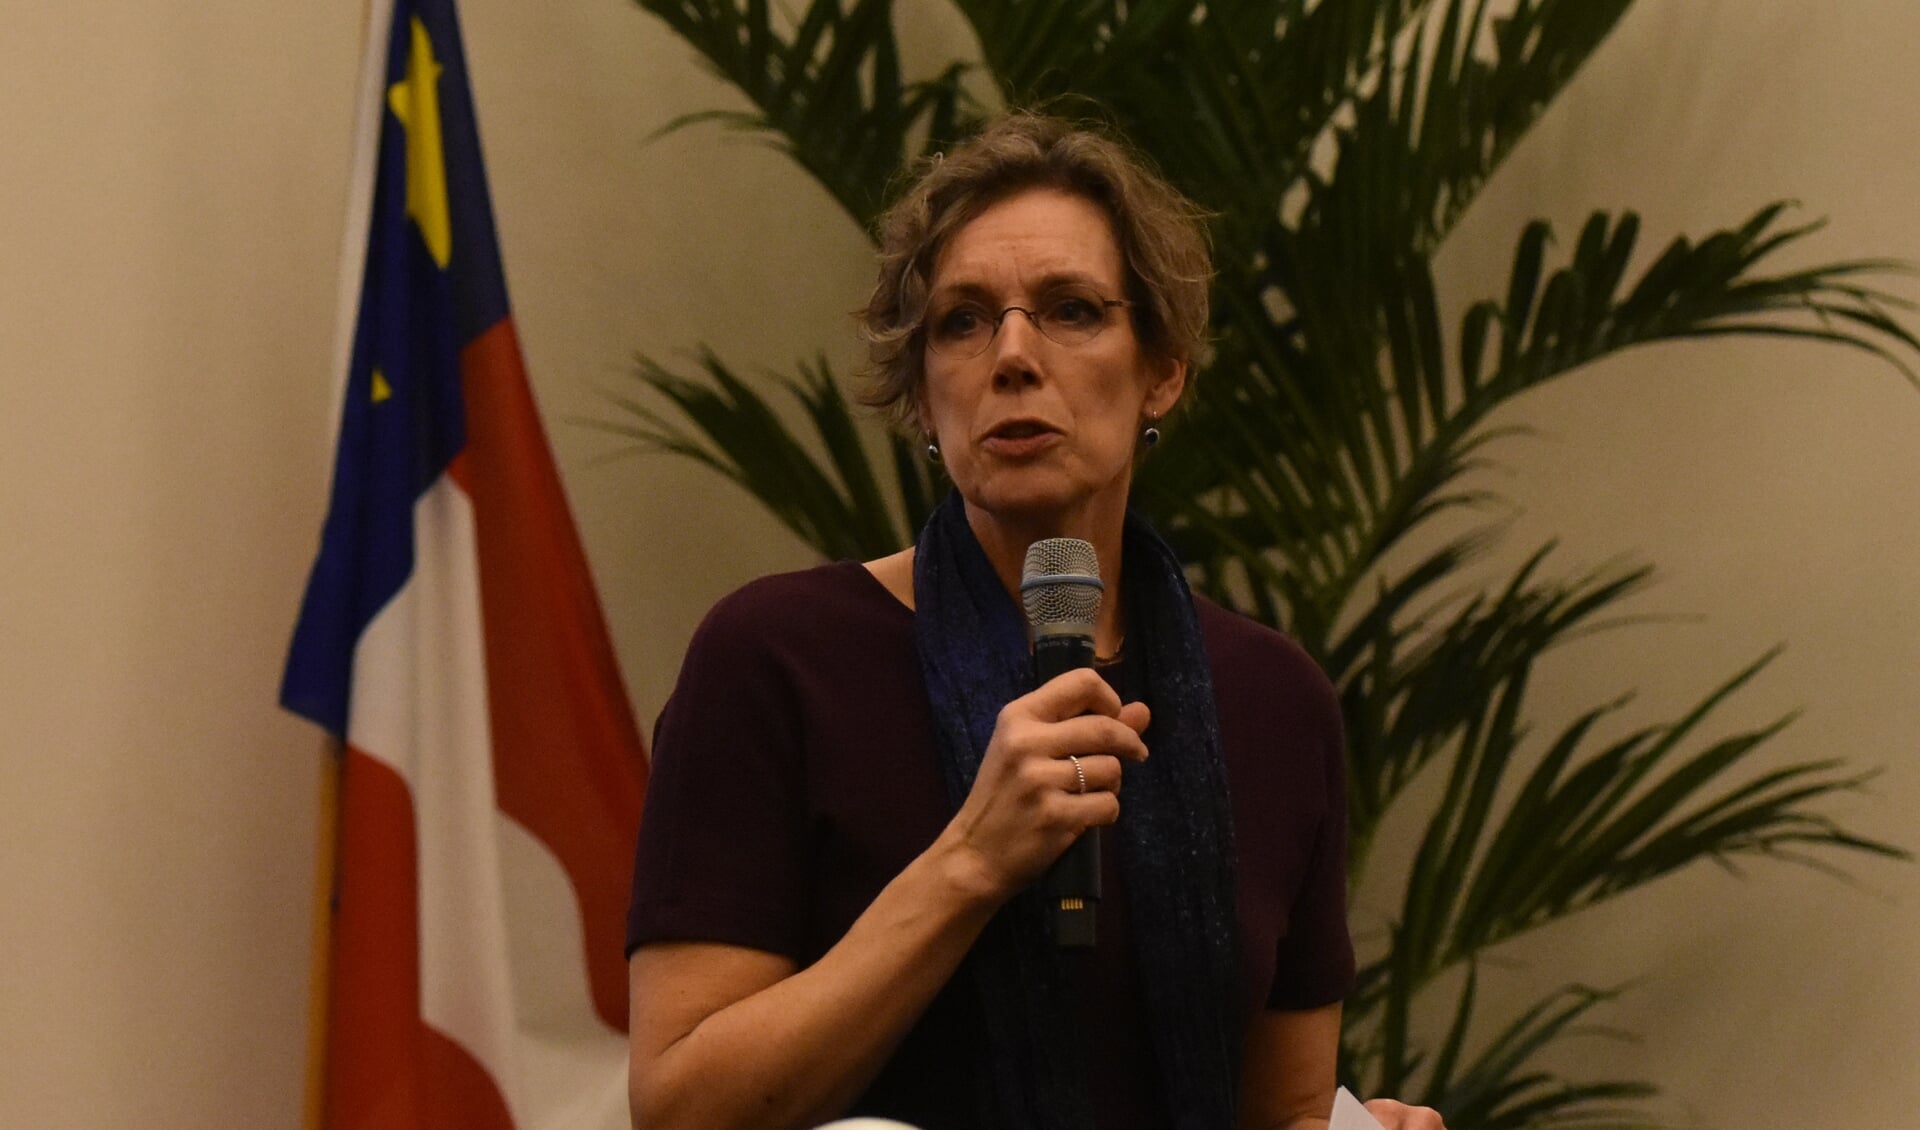 Directeur Jeannette Dekker (Thús Wonen) over de beleidsvisie Wonen, bij een raadsvergadering van Noardeast-Fryslân.